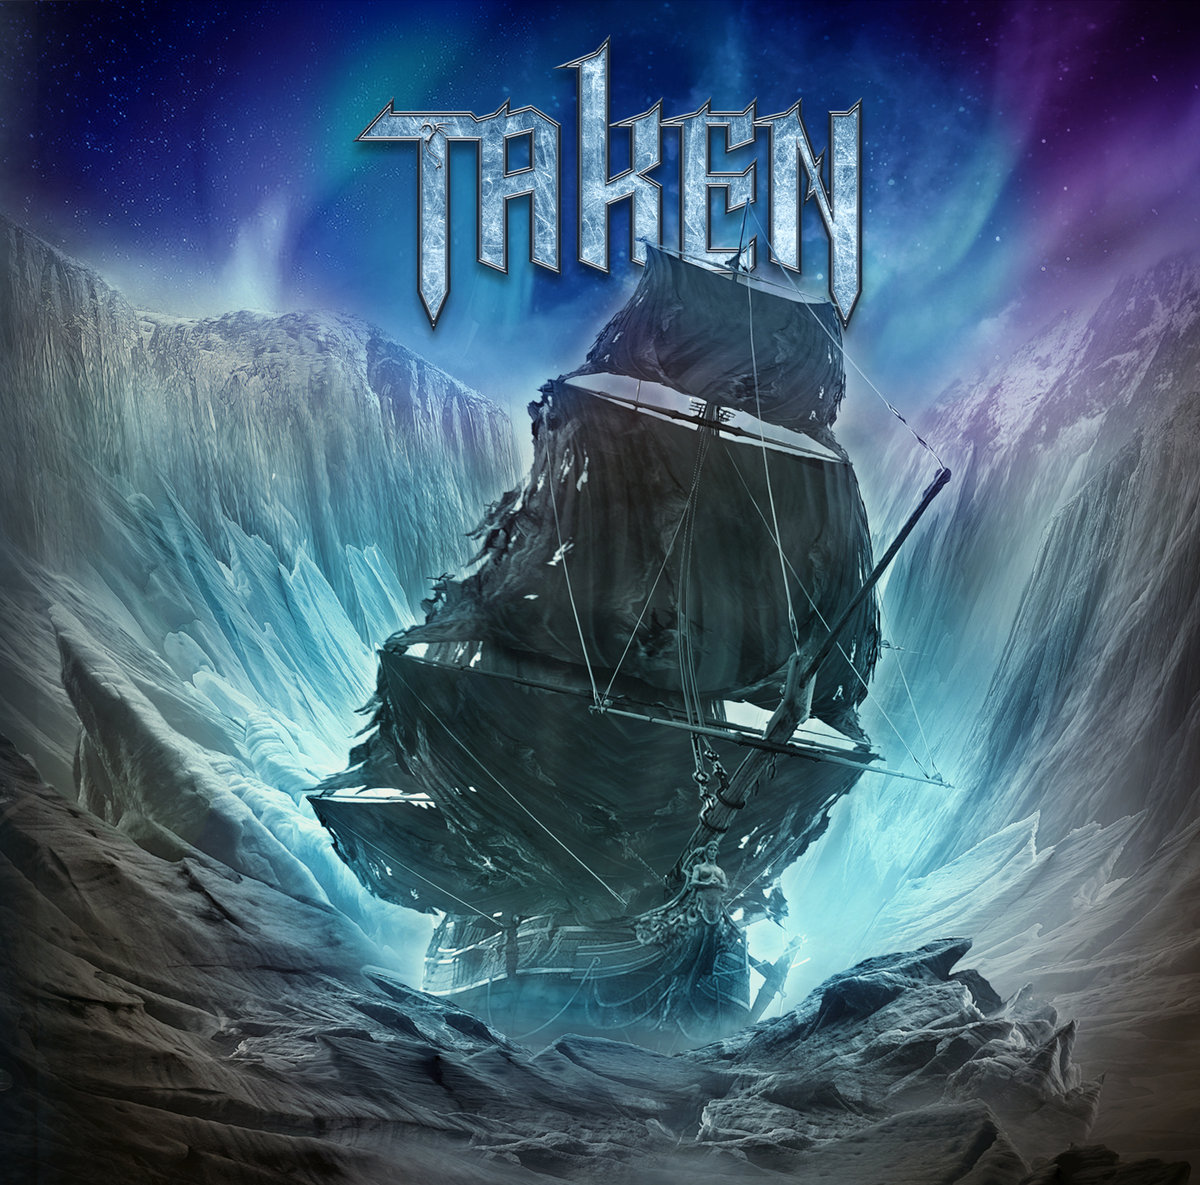 TAKEN - Taken cover 